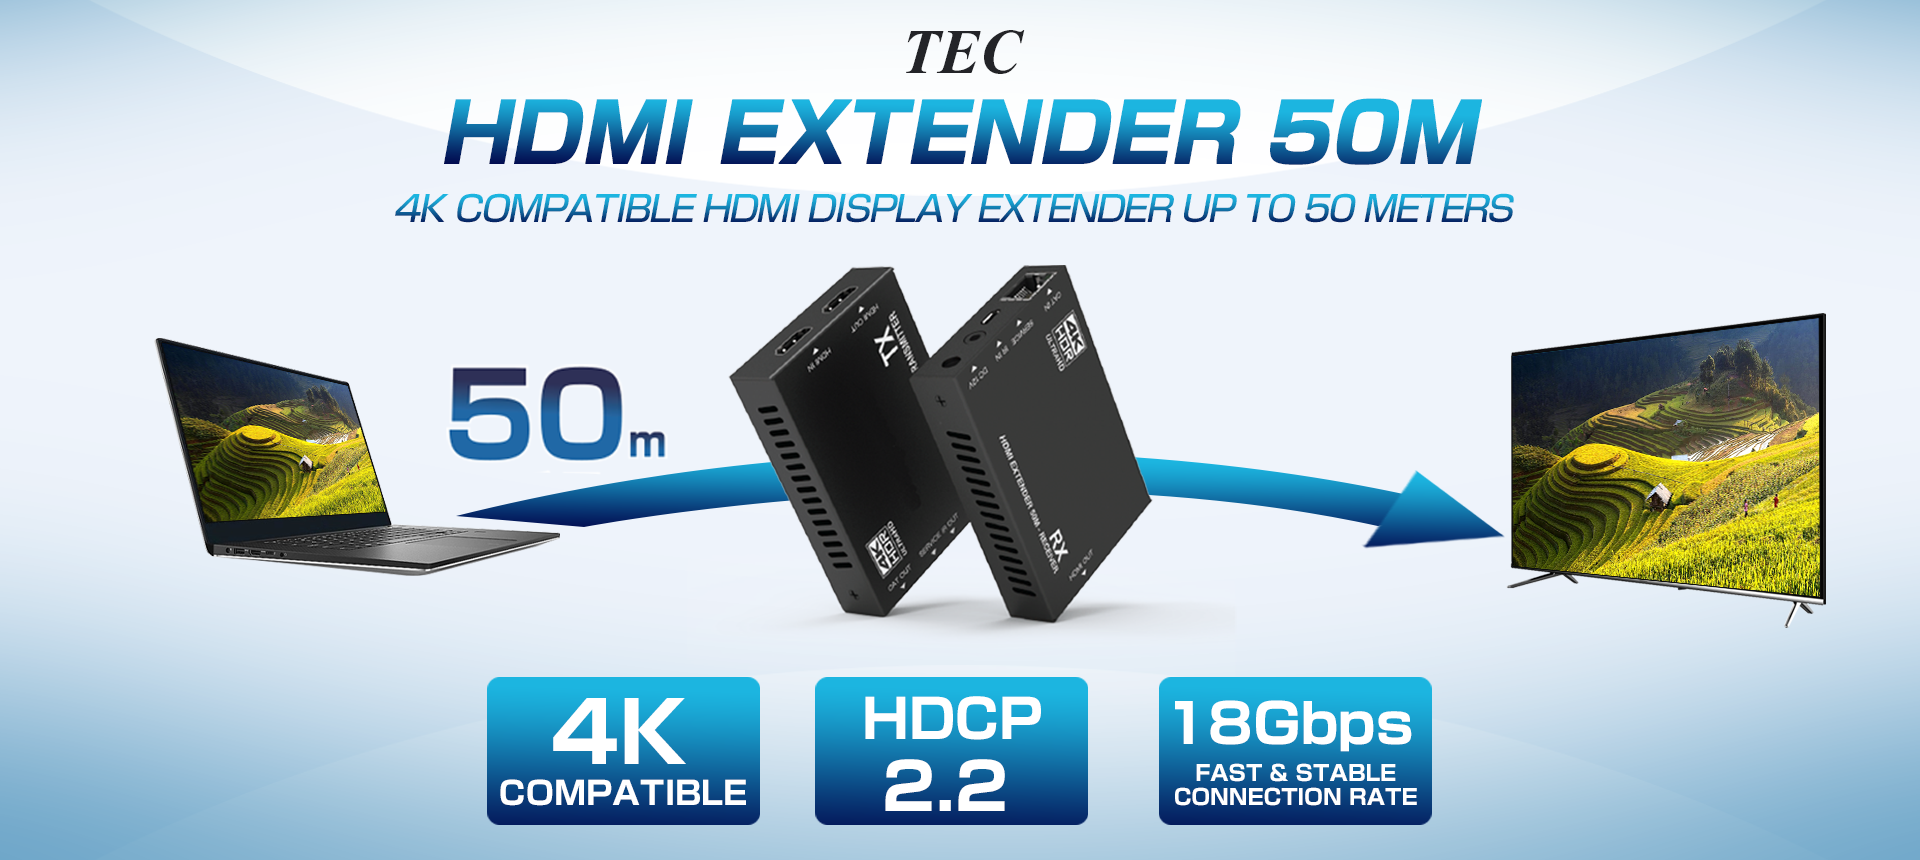 TEHDMIEX50-4K60